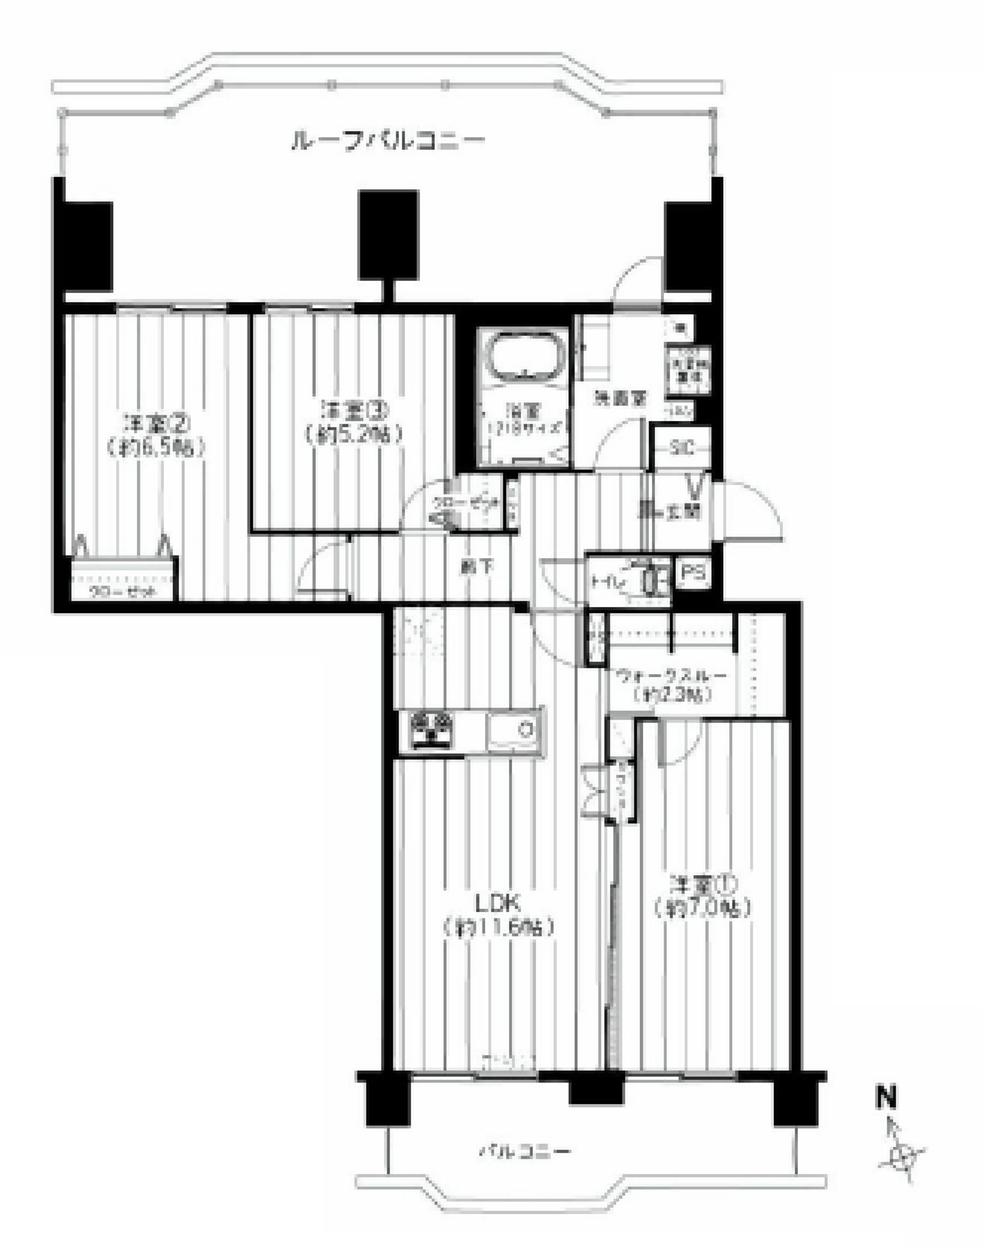 Floor plan. 3LDK, Price 24,990,000 yen, Occupied area 73.28 sq m